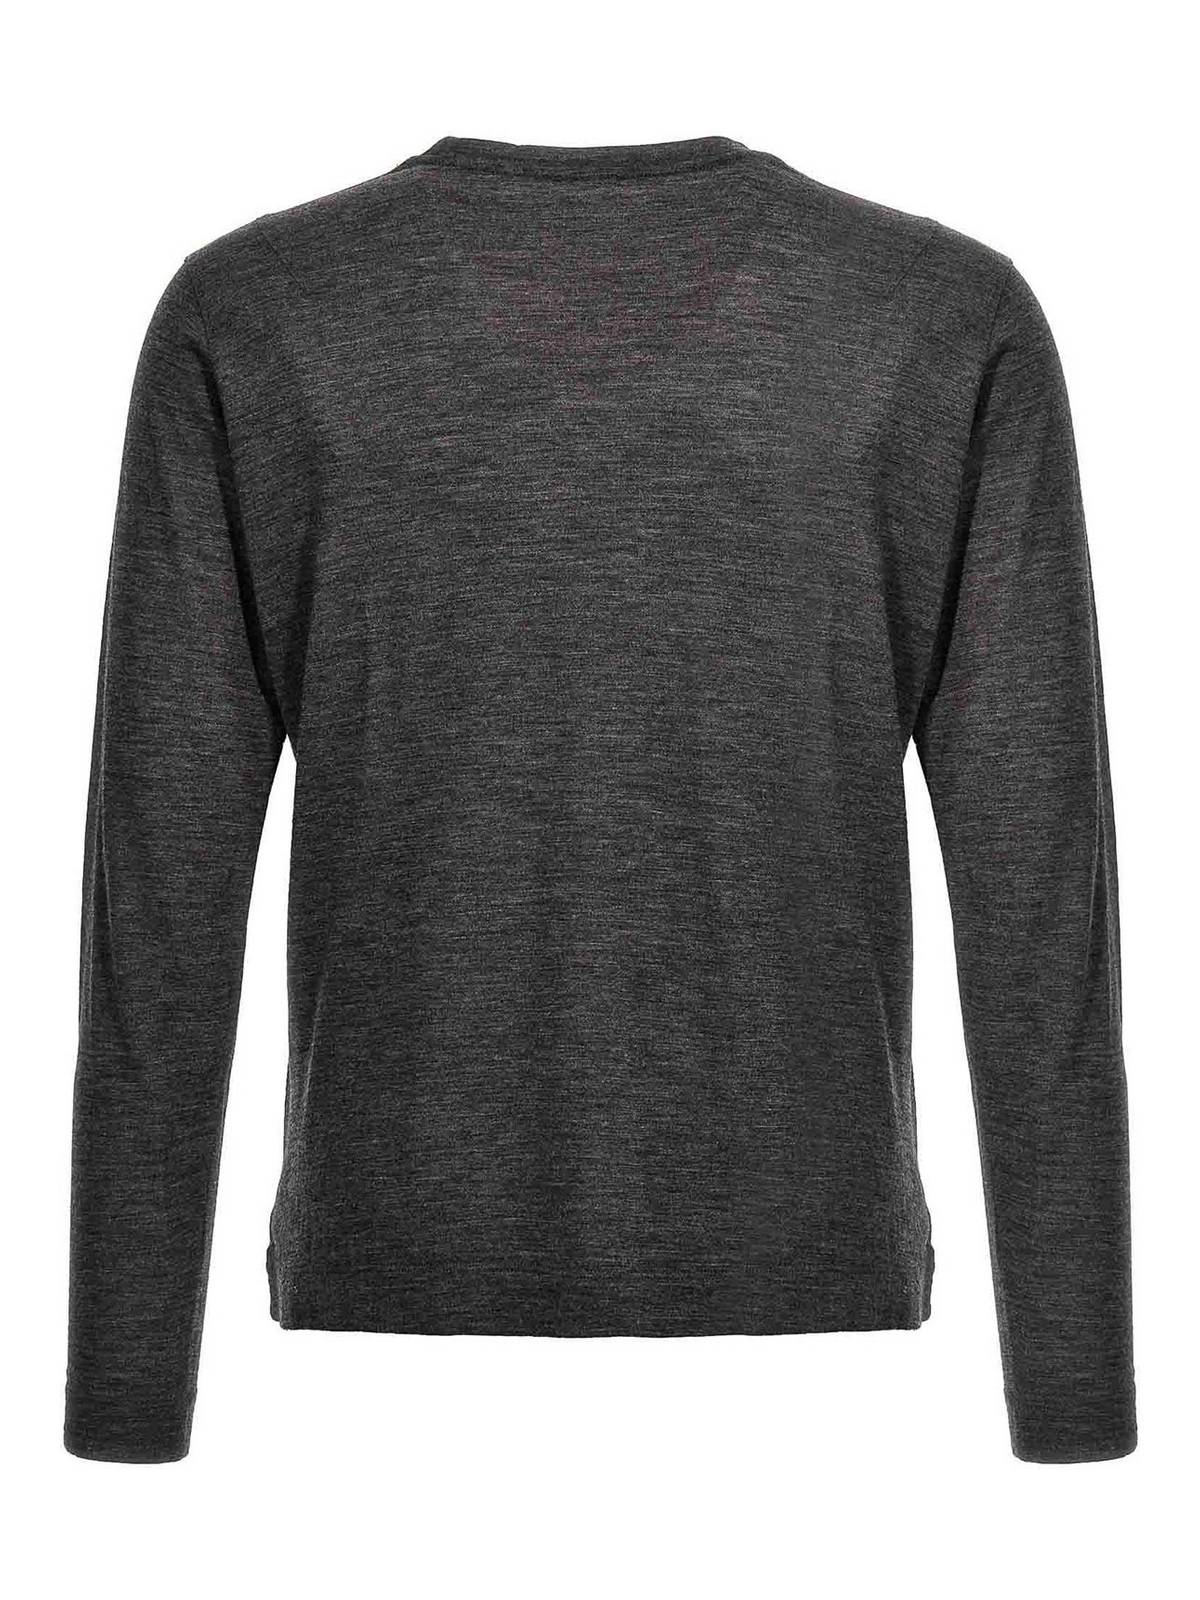 Shop Zanone Wool Sweater In Grey